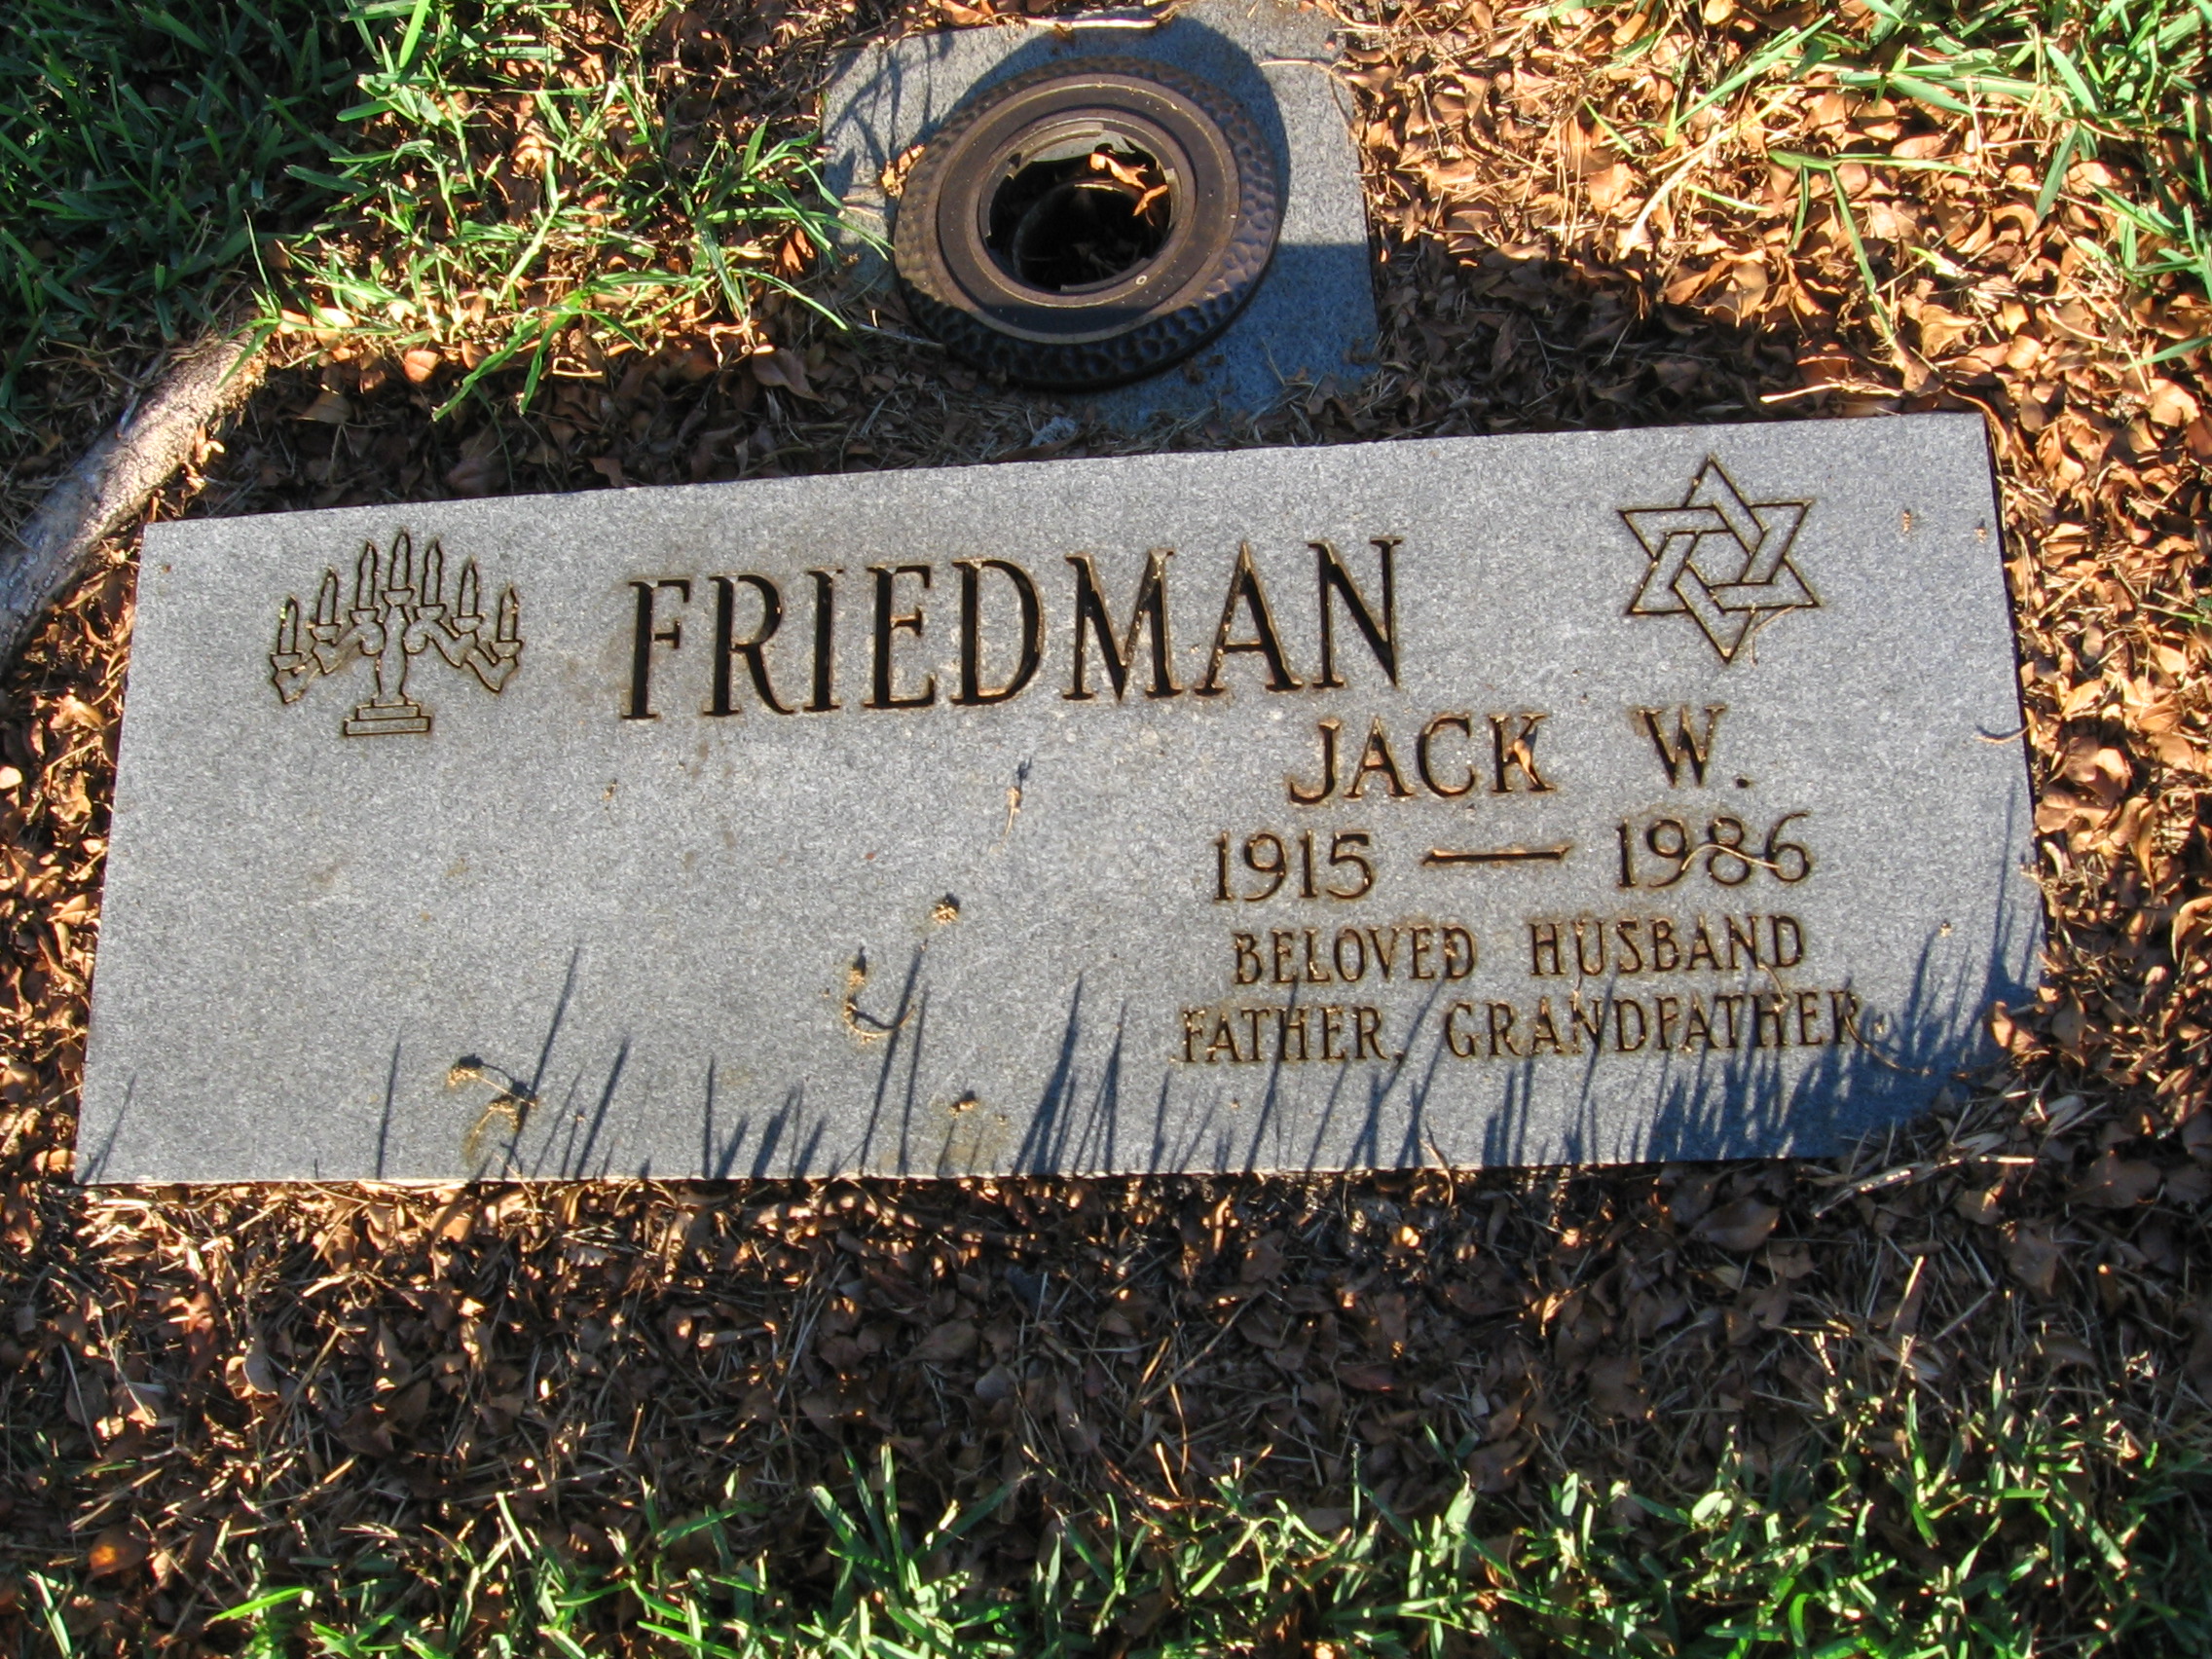 Jack W Friedman